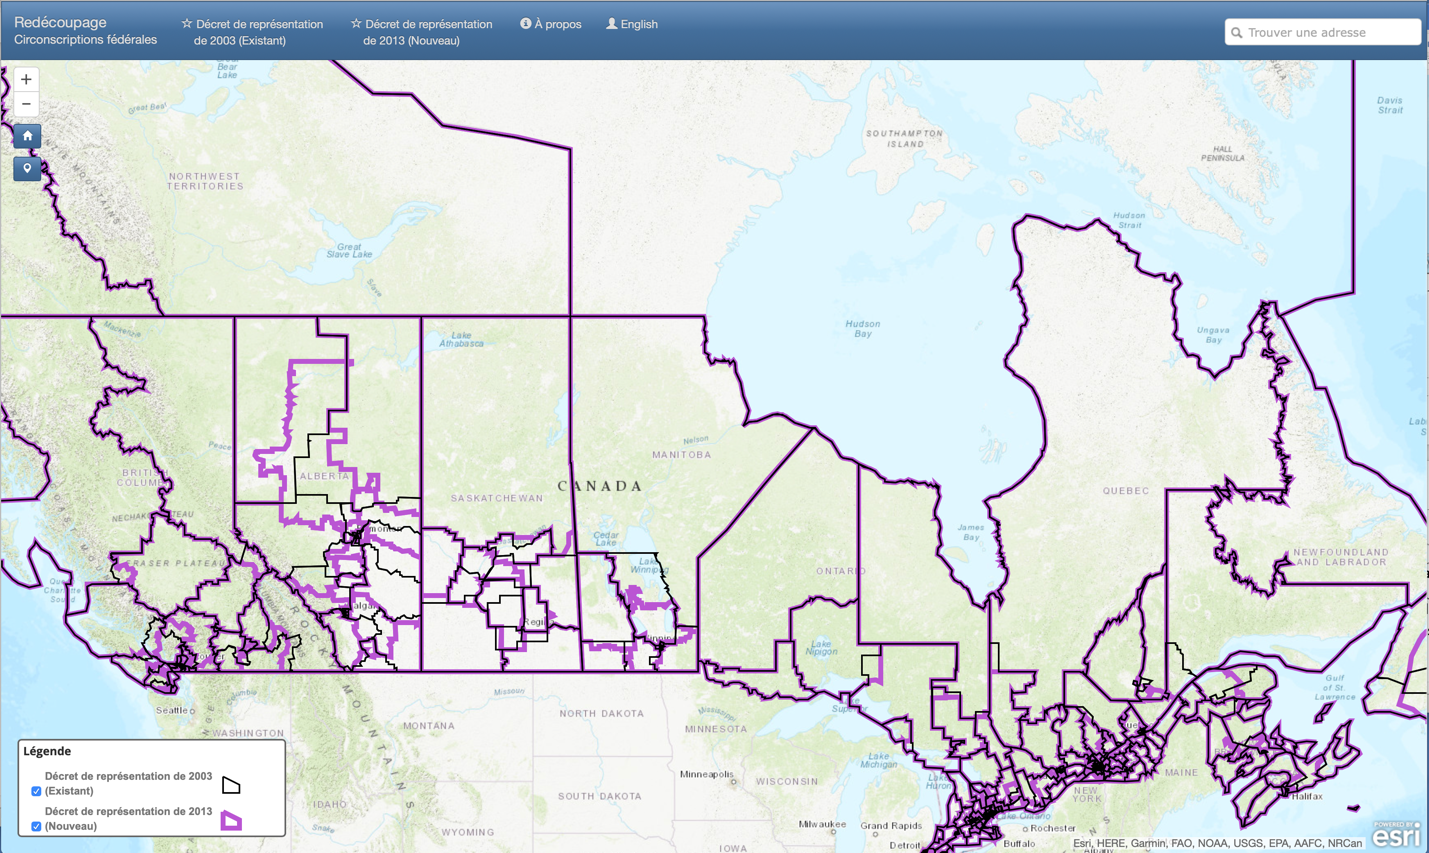 Carte du Canada avec des lignes mauves montrant les limites des circonscriptions électorales de 2003 et 2013